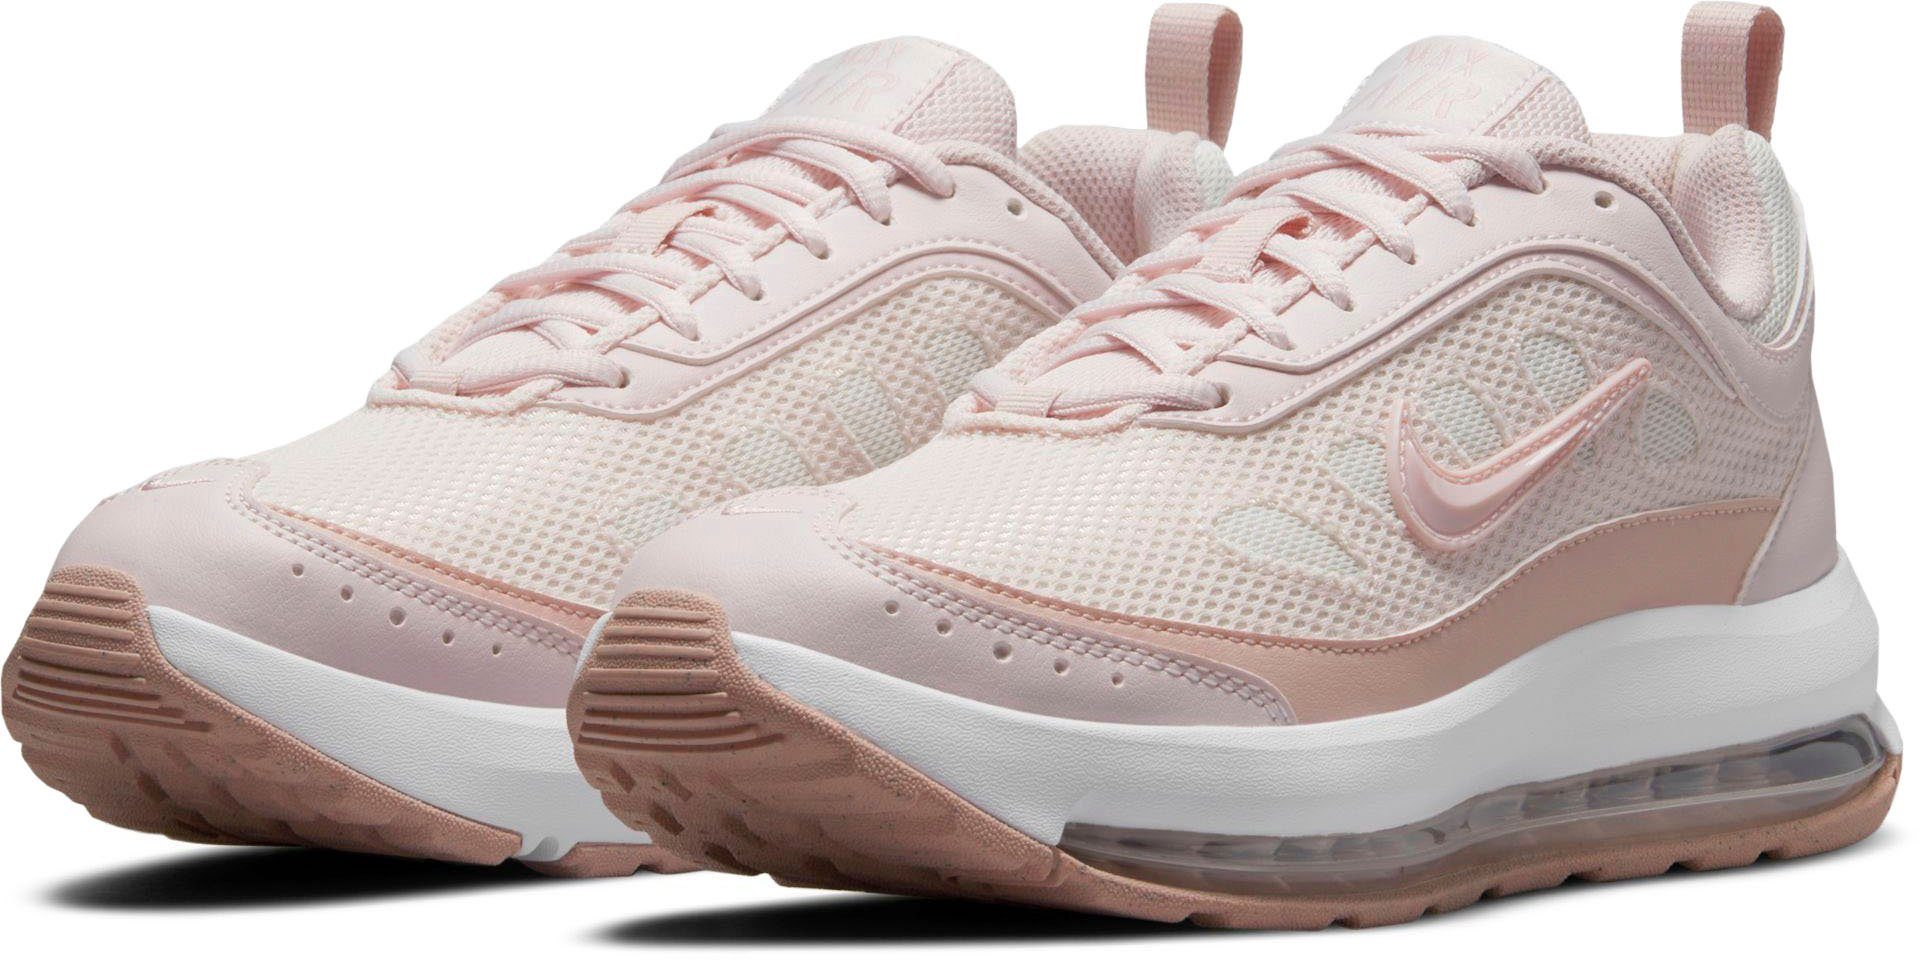 Nike Air Max Damen Schuhe online kaufen | OTTO